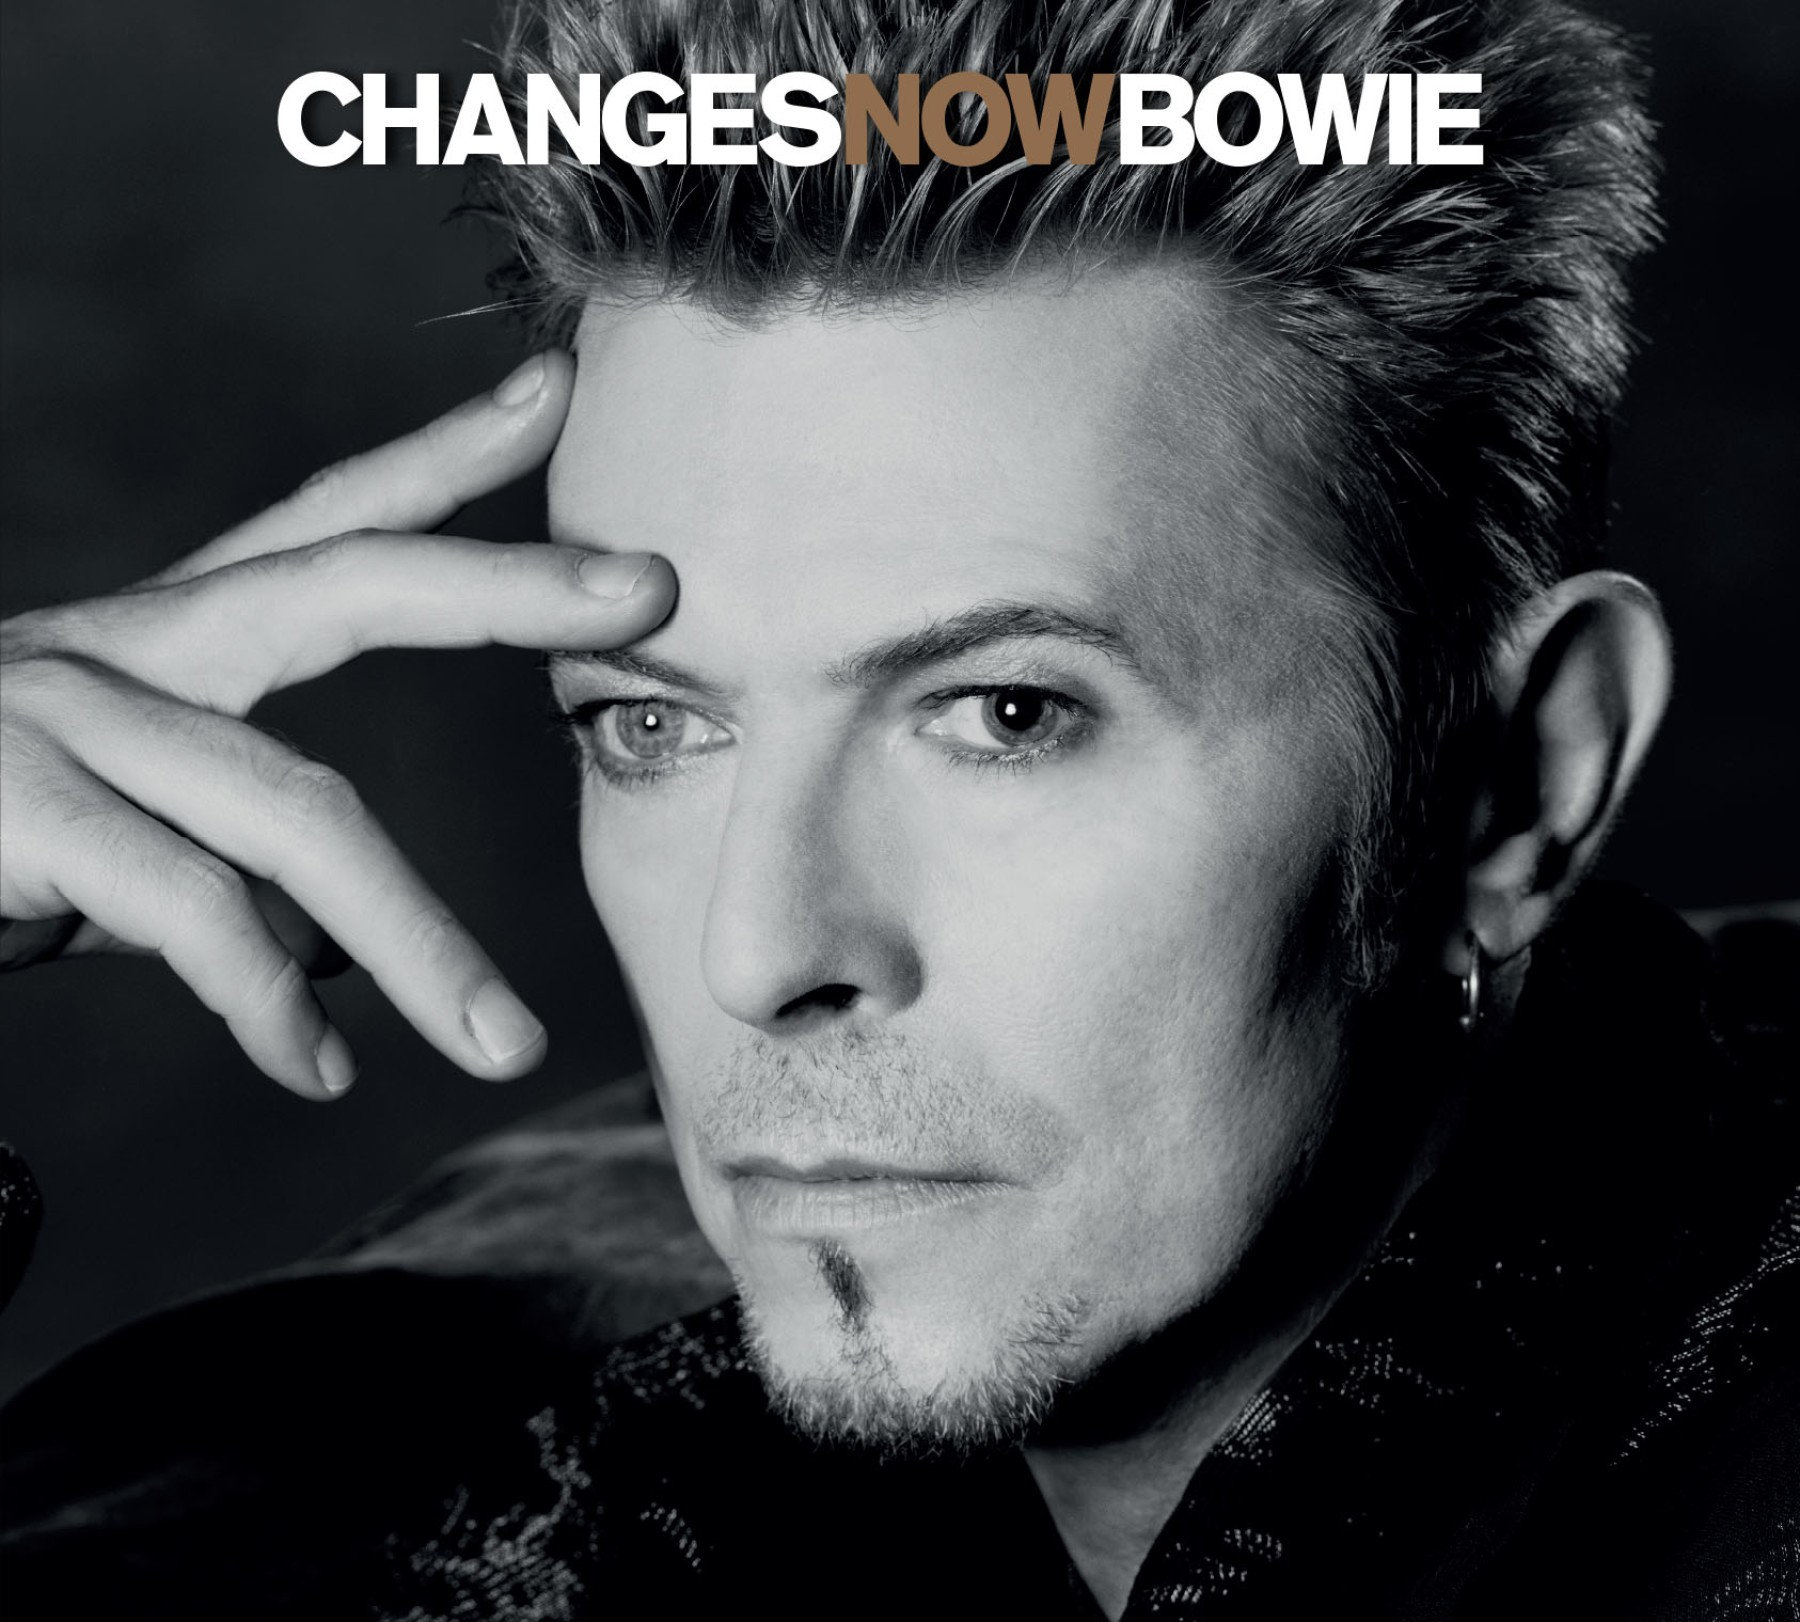 David Bowie : "ChangesNowBowie"